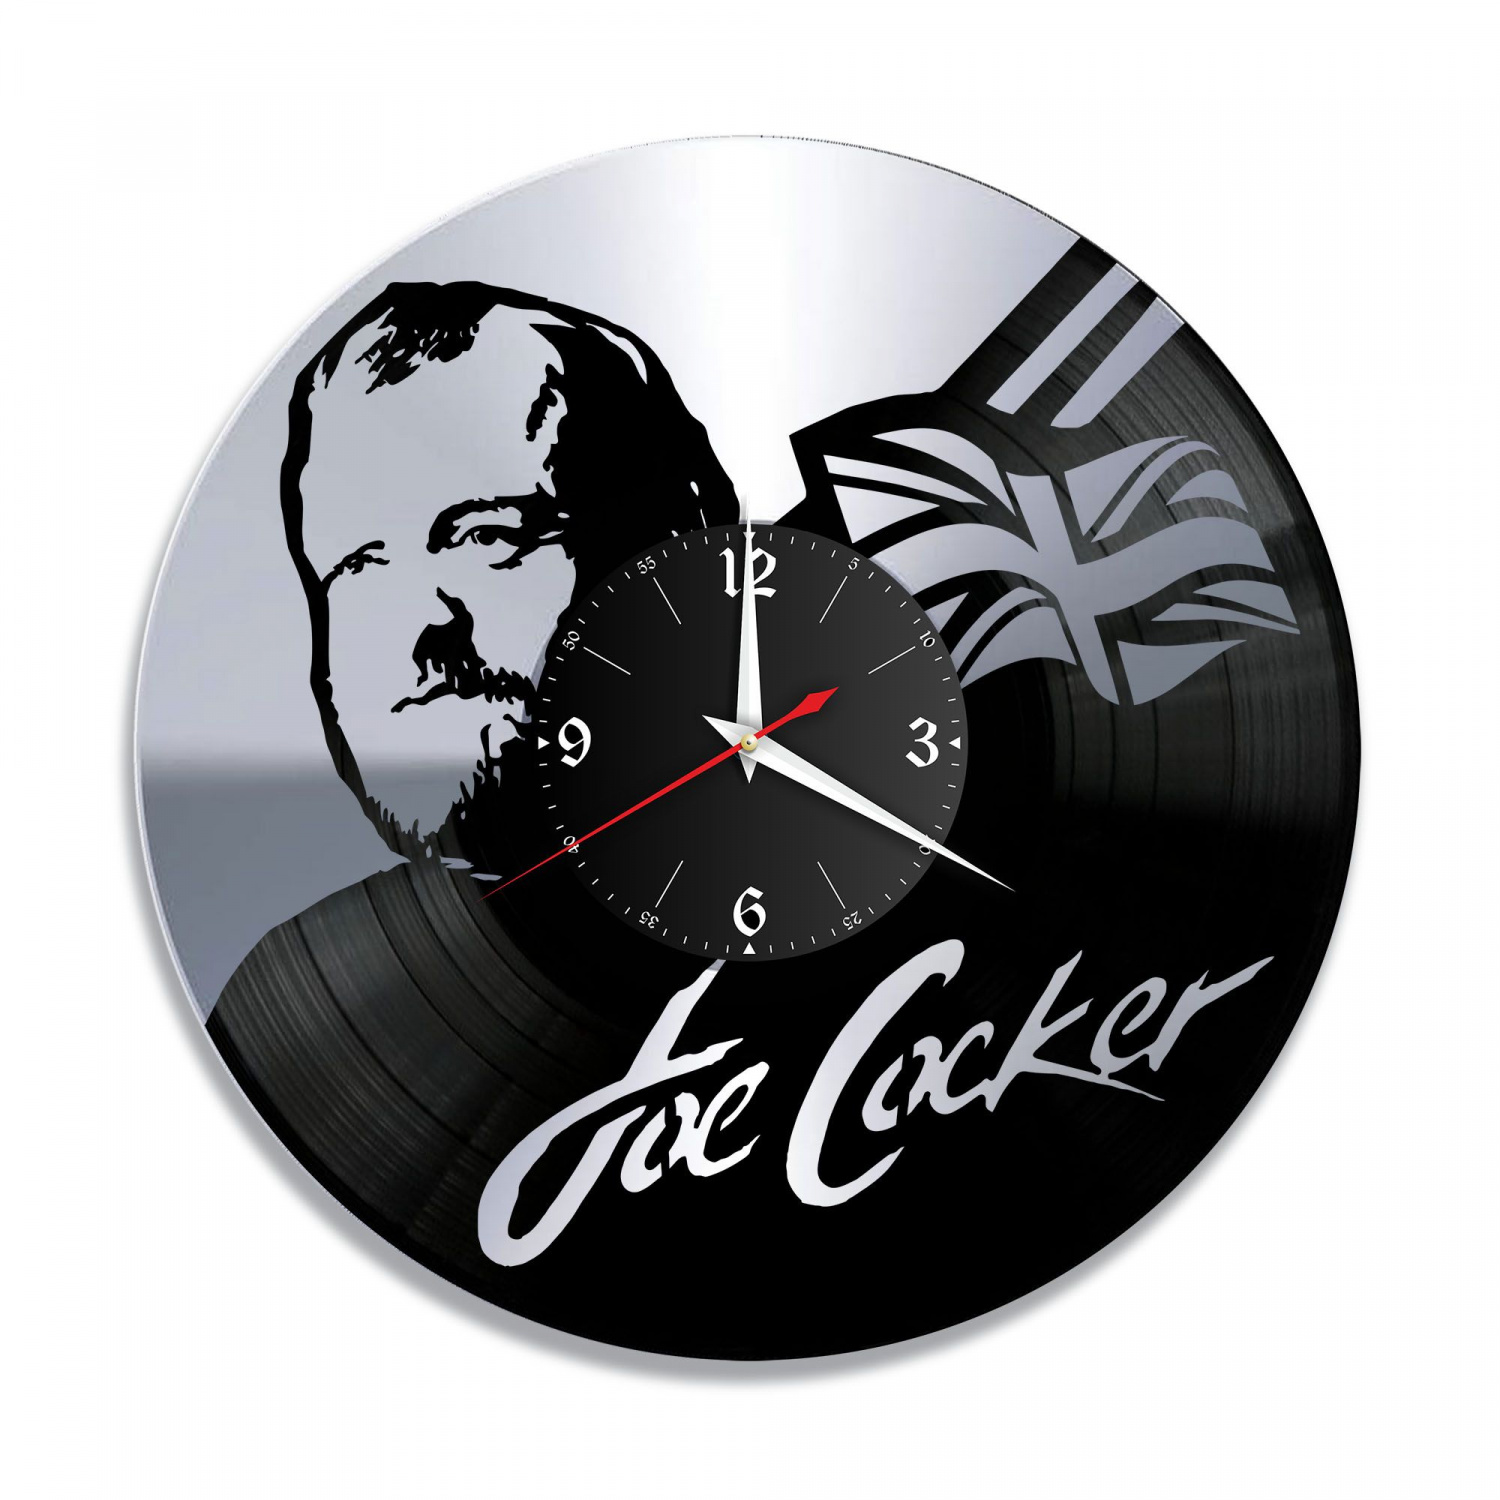 Часы настенные "Джо Кокер (Joe Cocker), серебро" из винила, №1 VC-10930-2